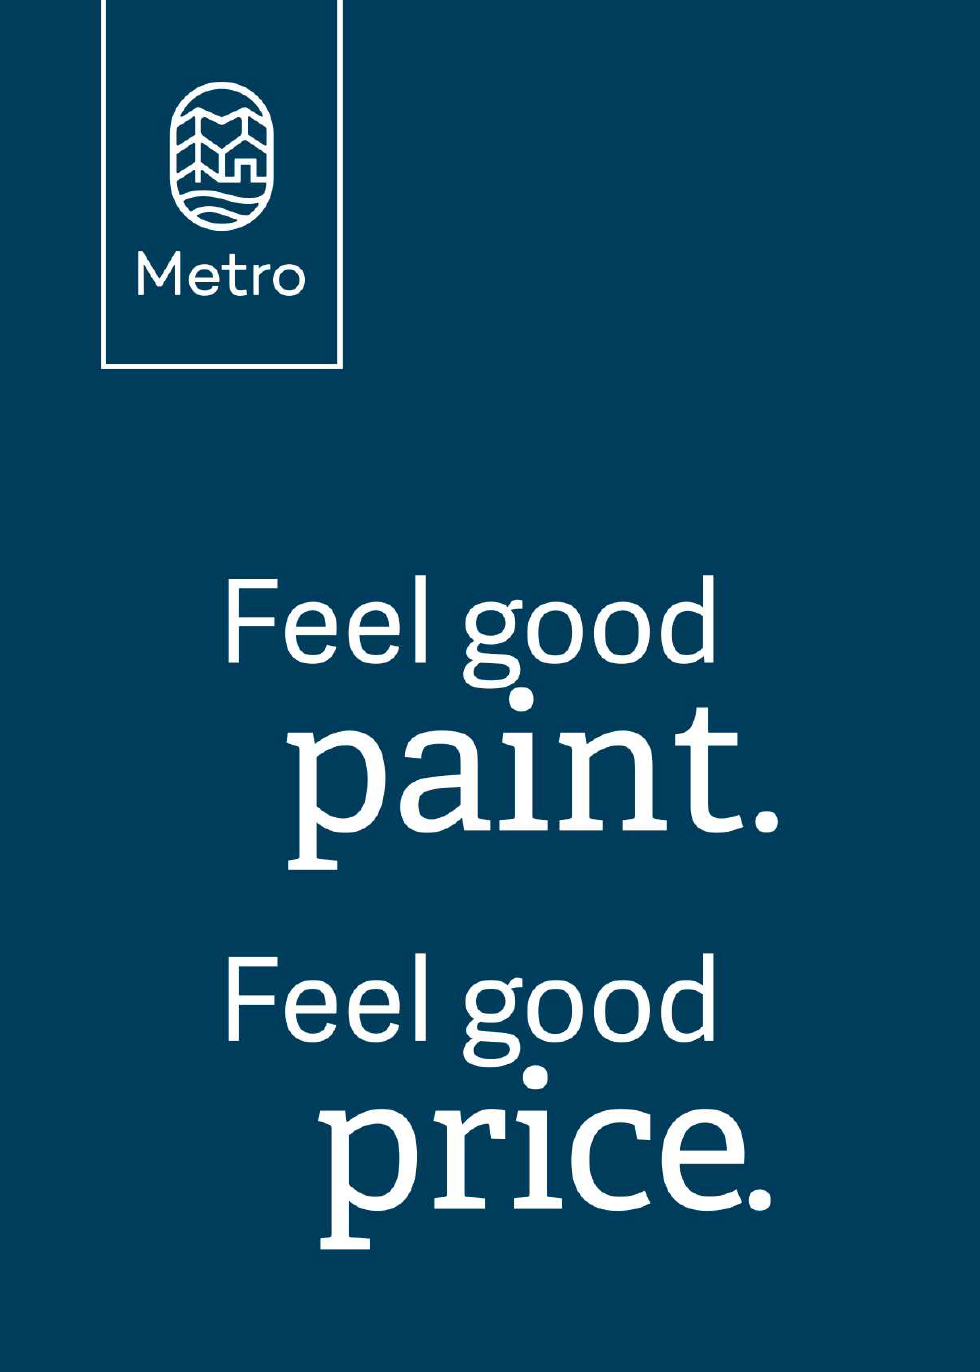 MetroPaint Logo